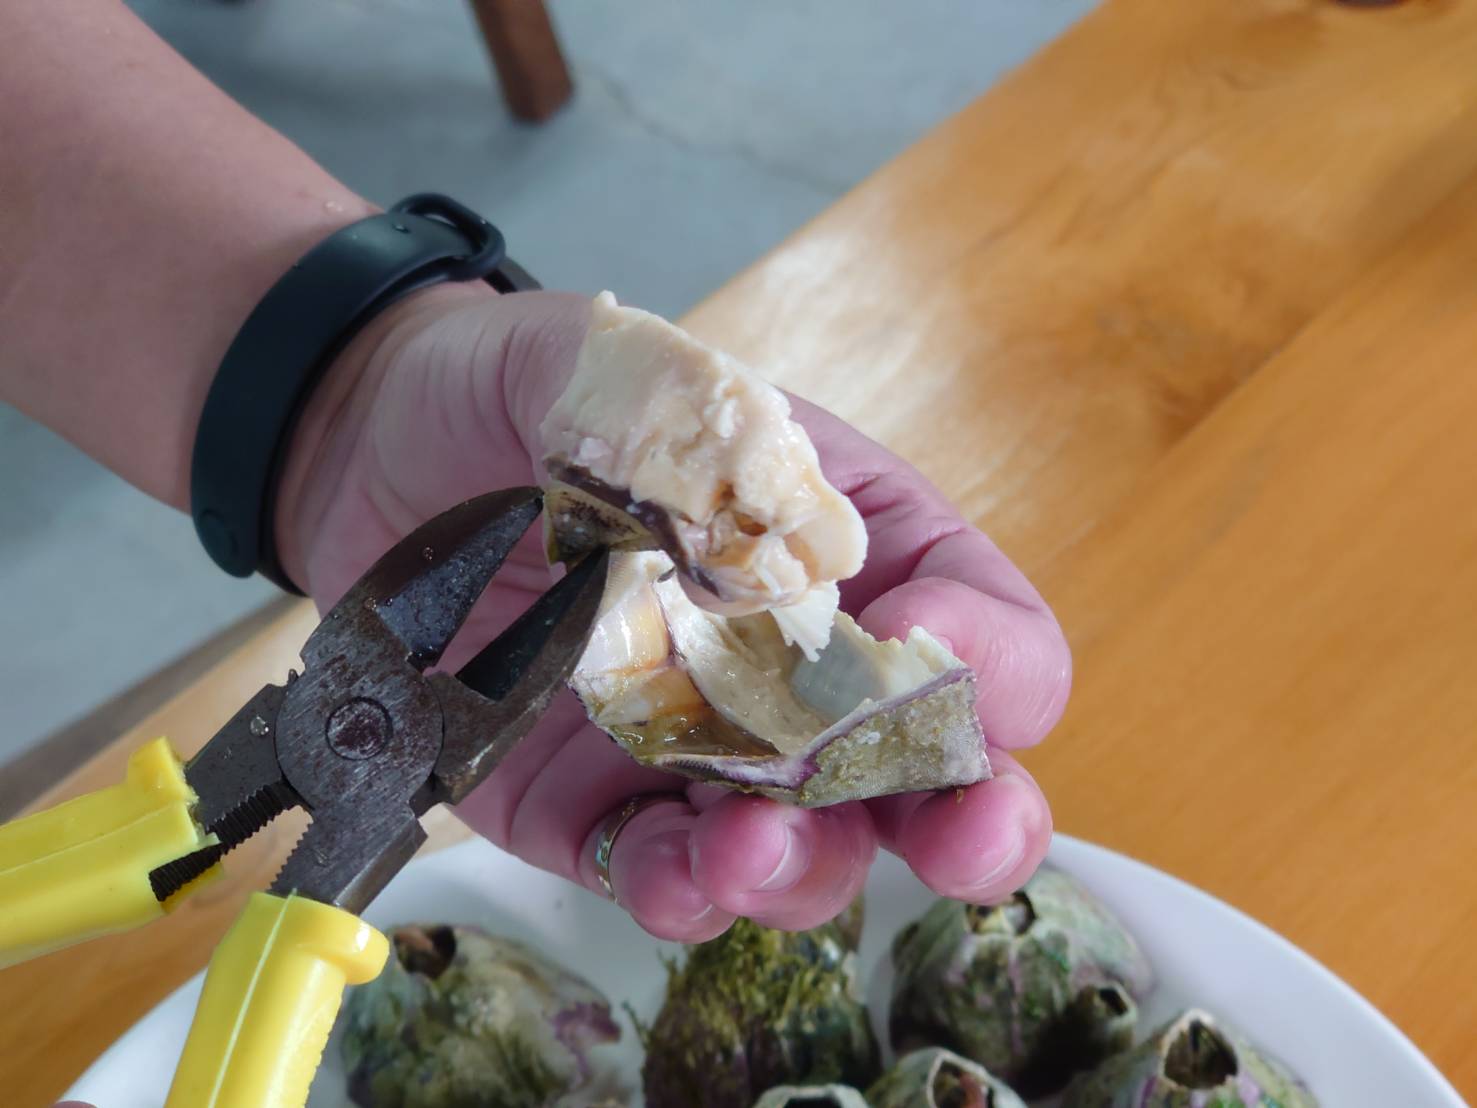 食用藤壺時需要使用工具（鉗子）將甲殼撥除才能取得藤壺肉，因此建議民眾若想嘗試可以直接到當地餐廳。圖/取自新北市政府網站